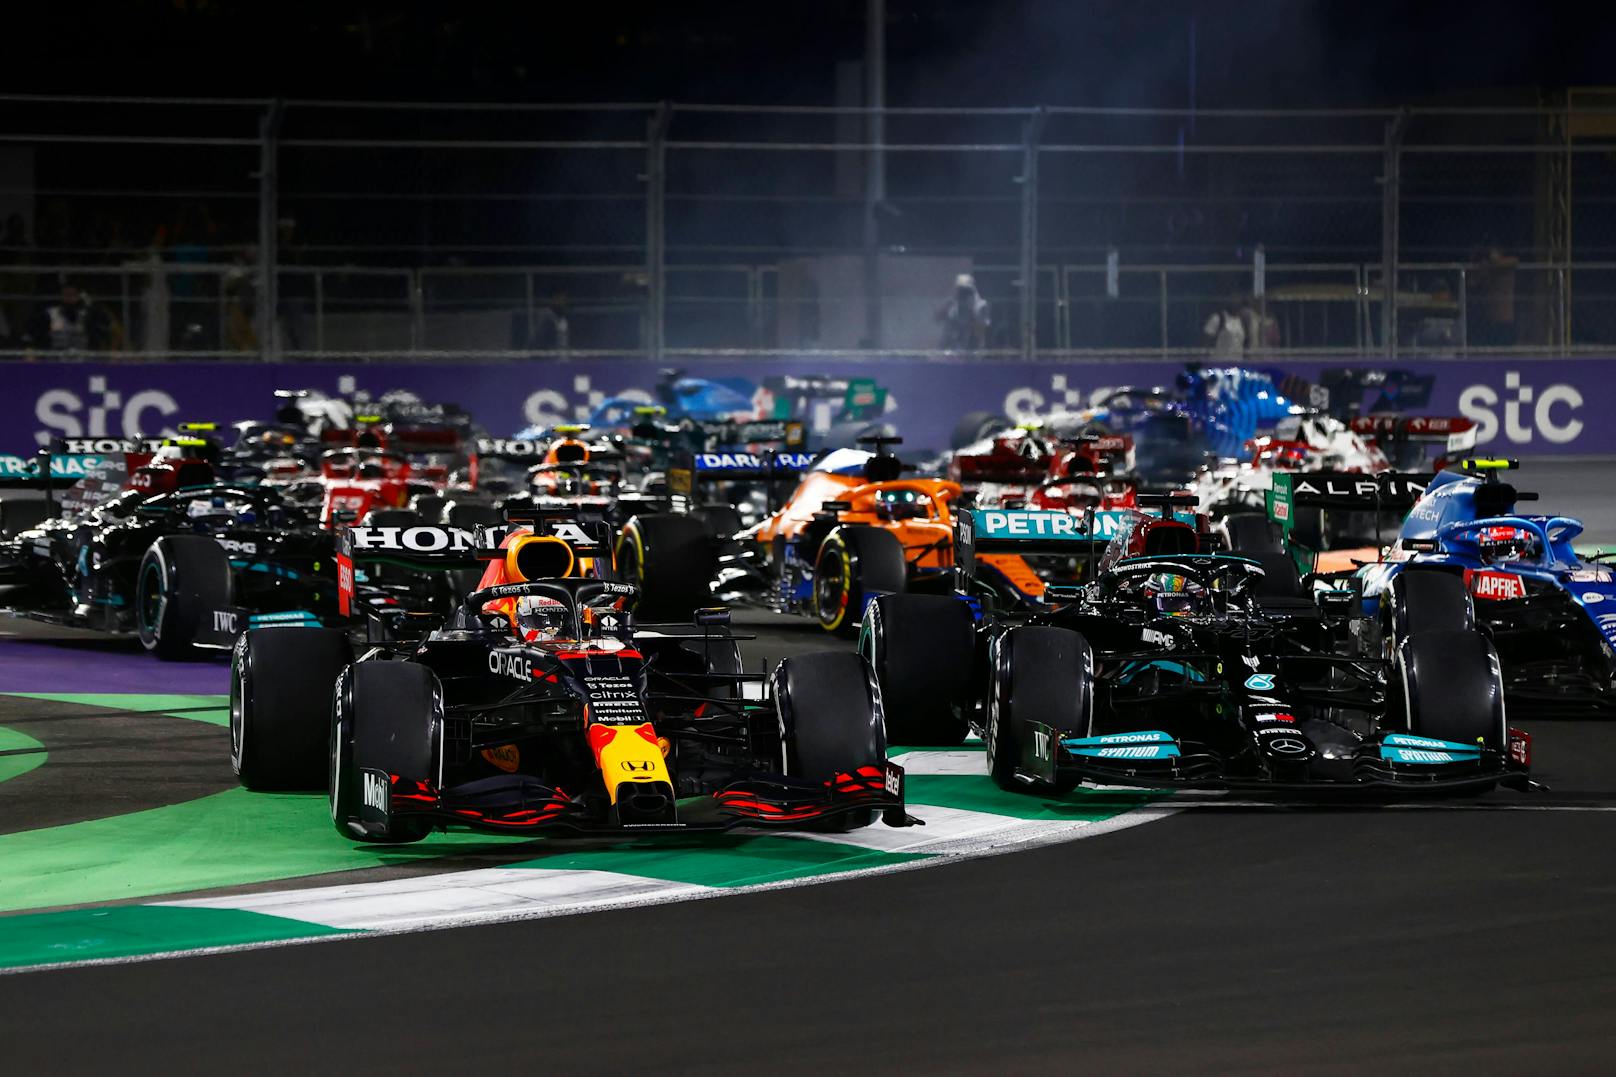 Der spektakuläre Grand Prix von Saudi-Arabien